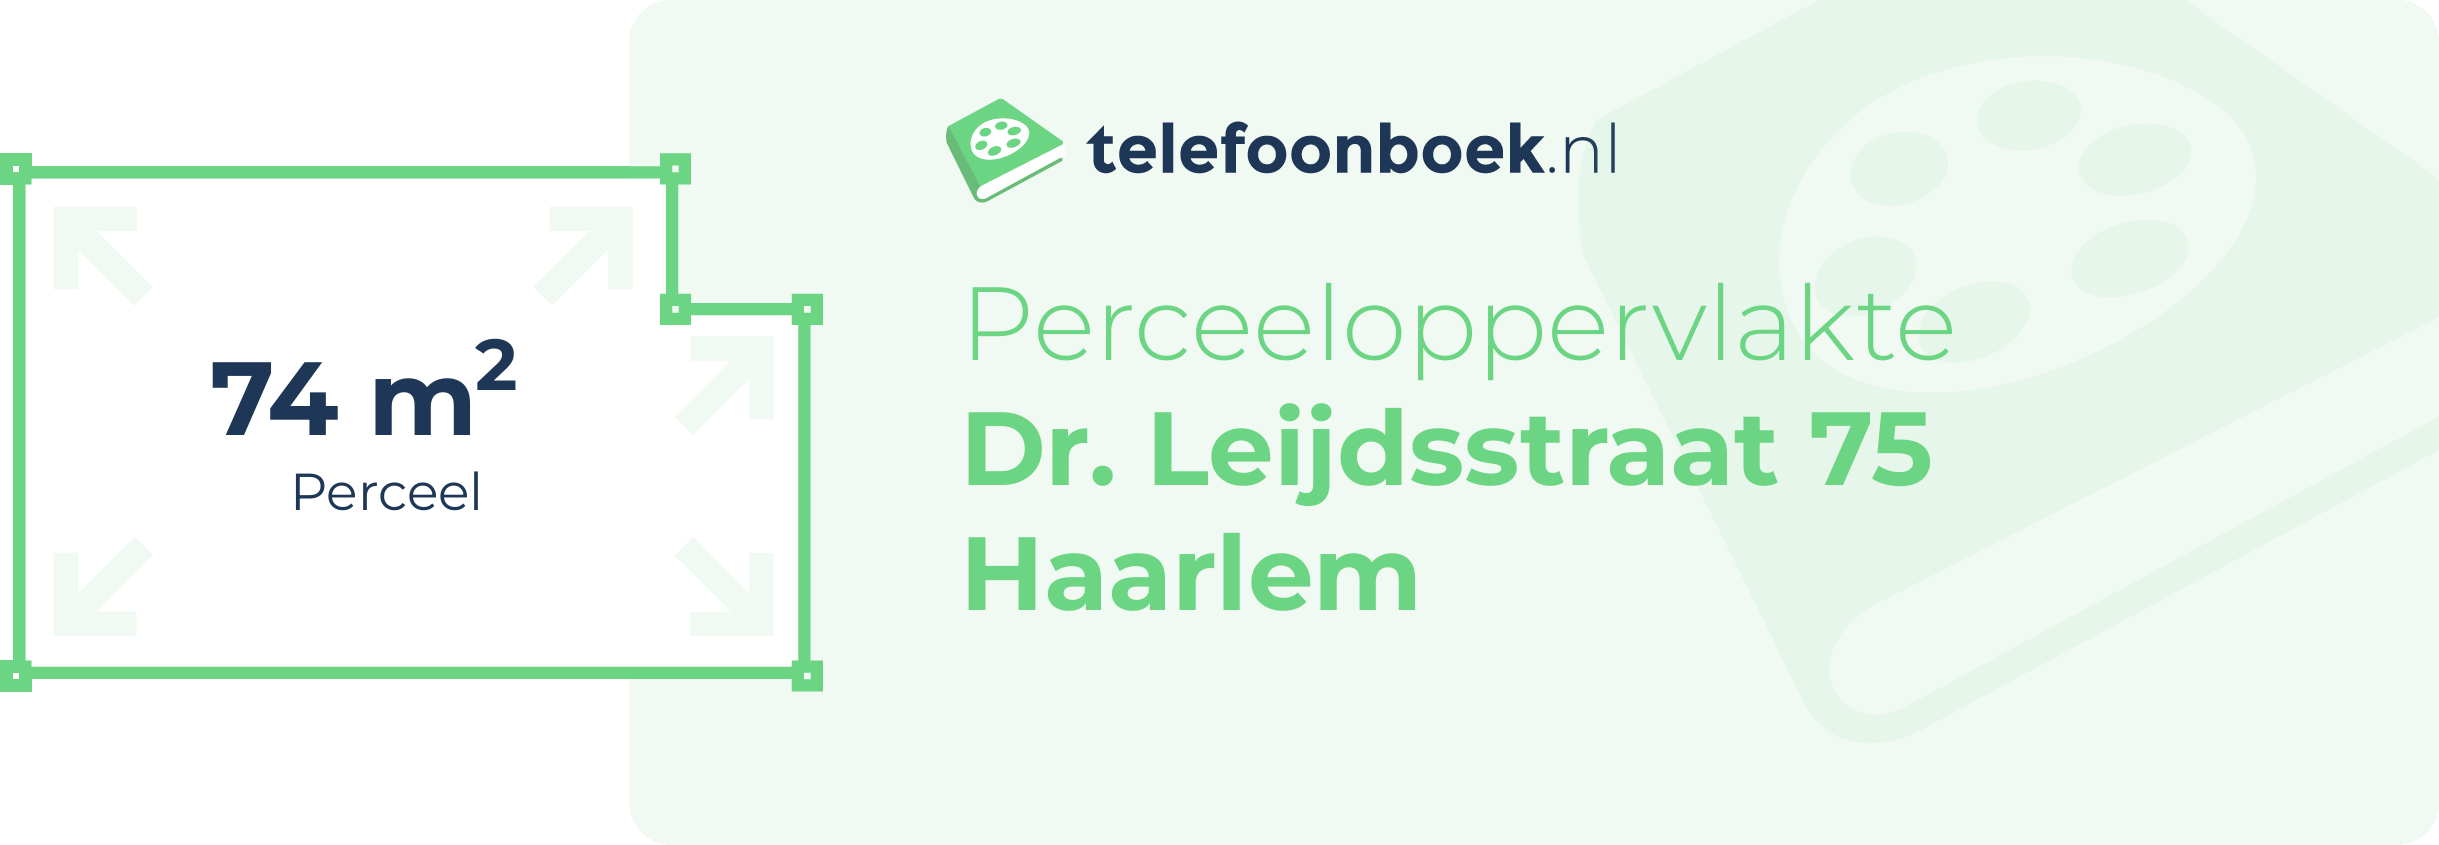 Perceeloppervlakte Dr. Leijdsstraat 75 Haarlem